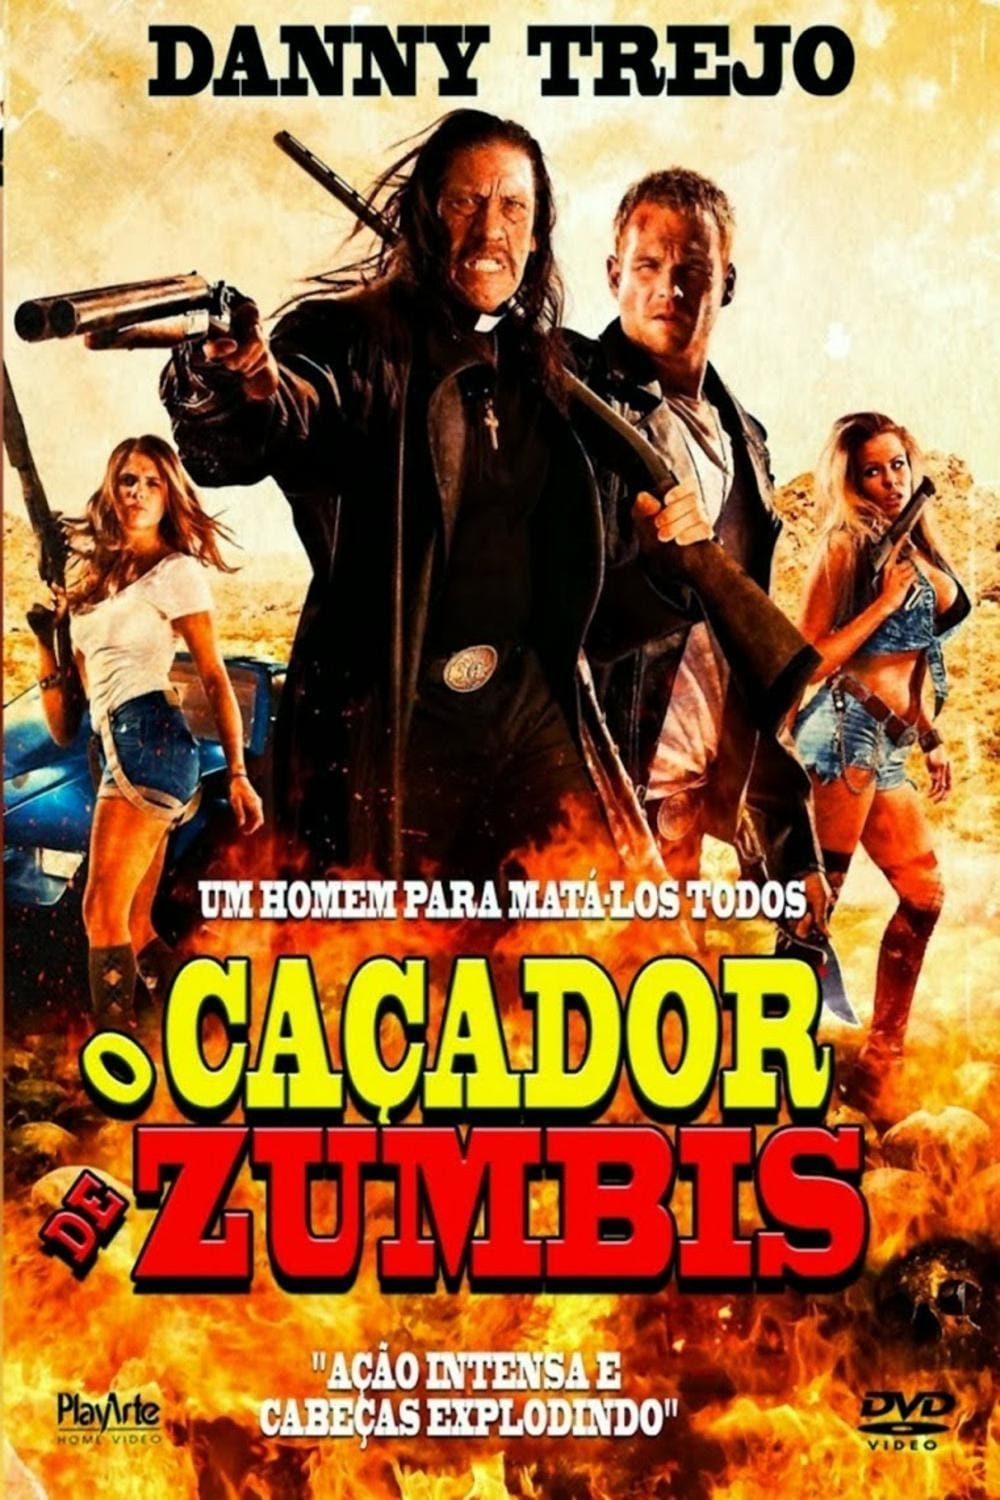 Plakat von "Zombie Hunter"